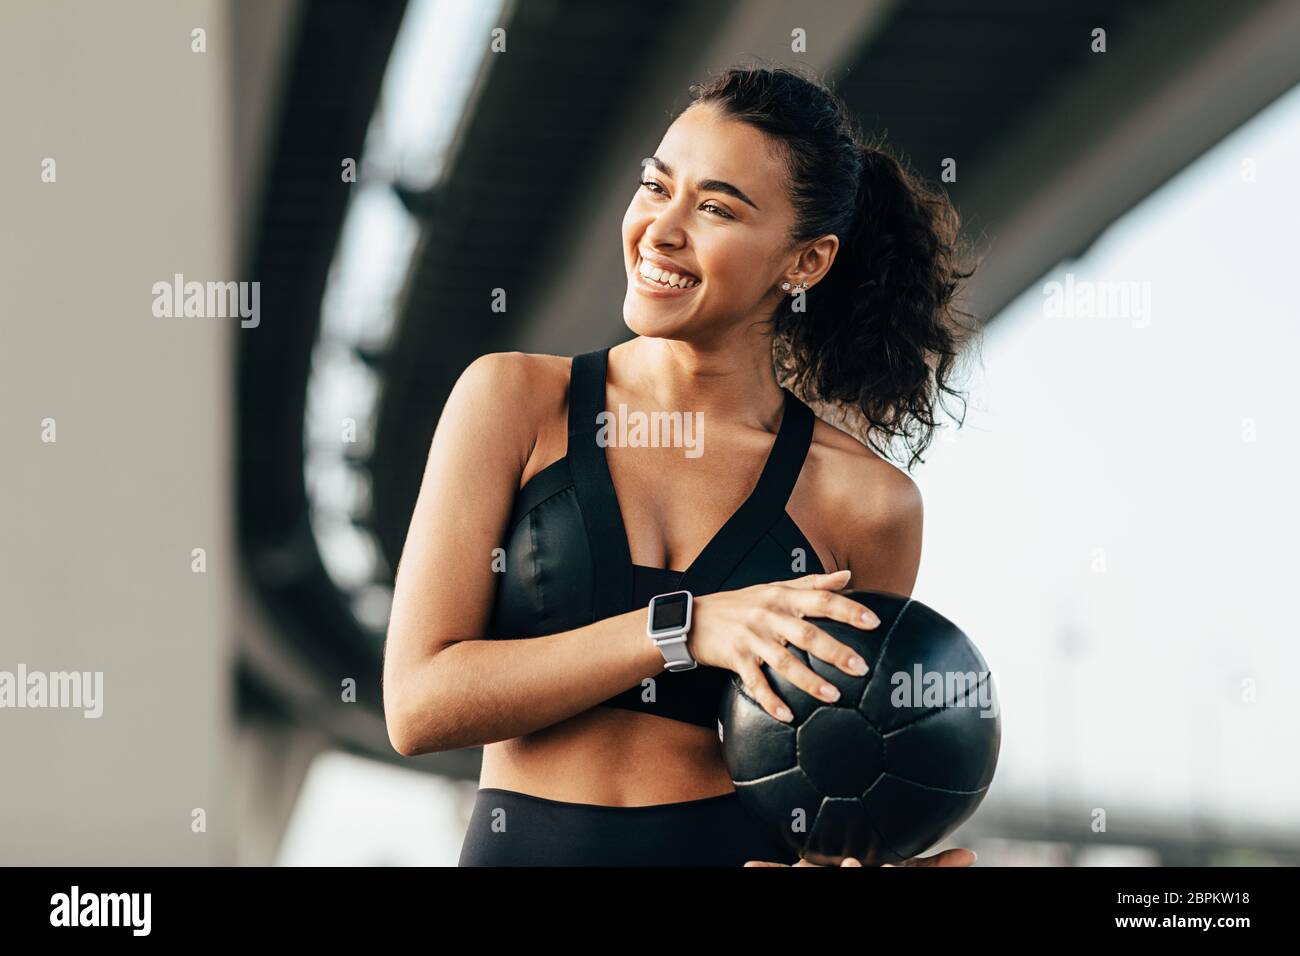 Schöne Frau, die einen Medizinball hält und wegschaut. Lächelnde Sportlerin, die unter einer Autobahn trainiert. Stockfoto